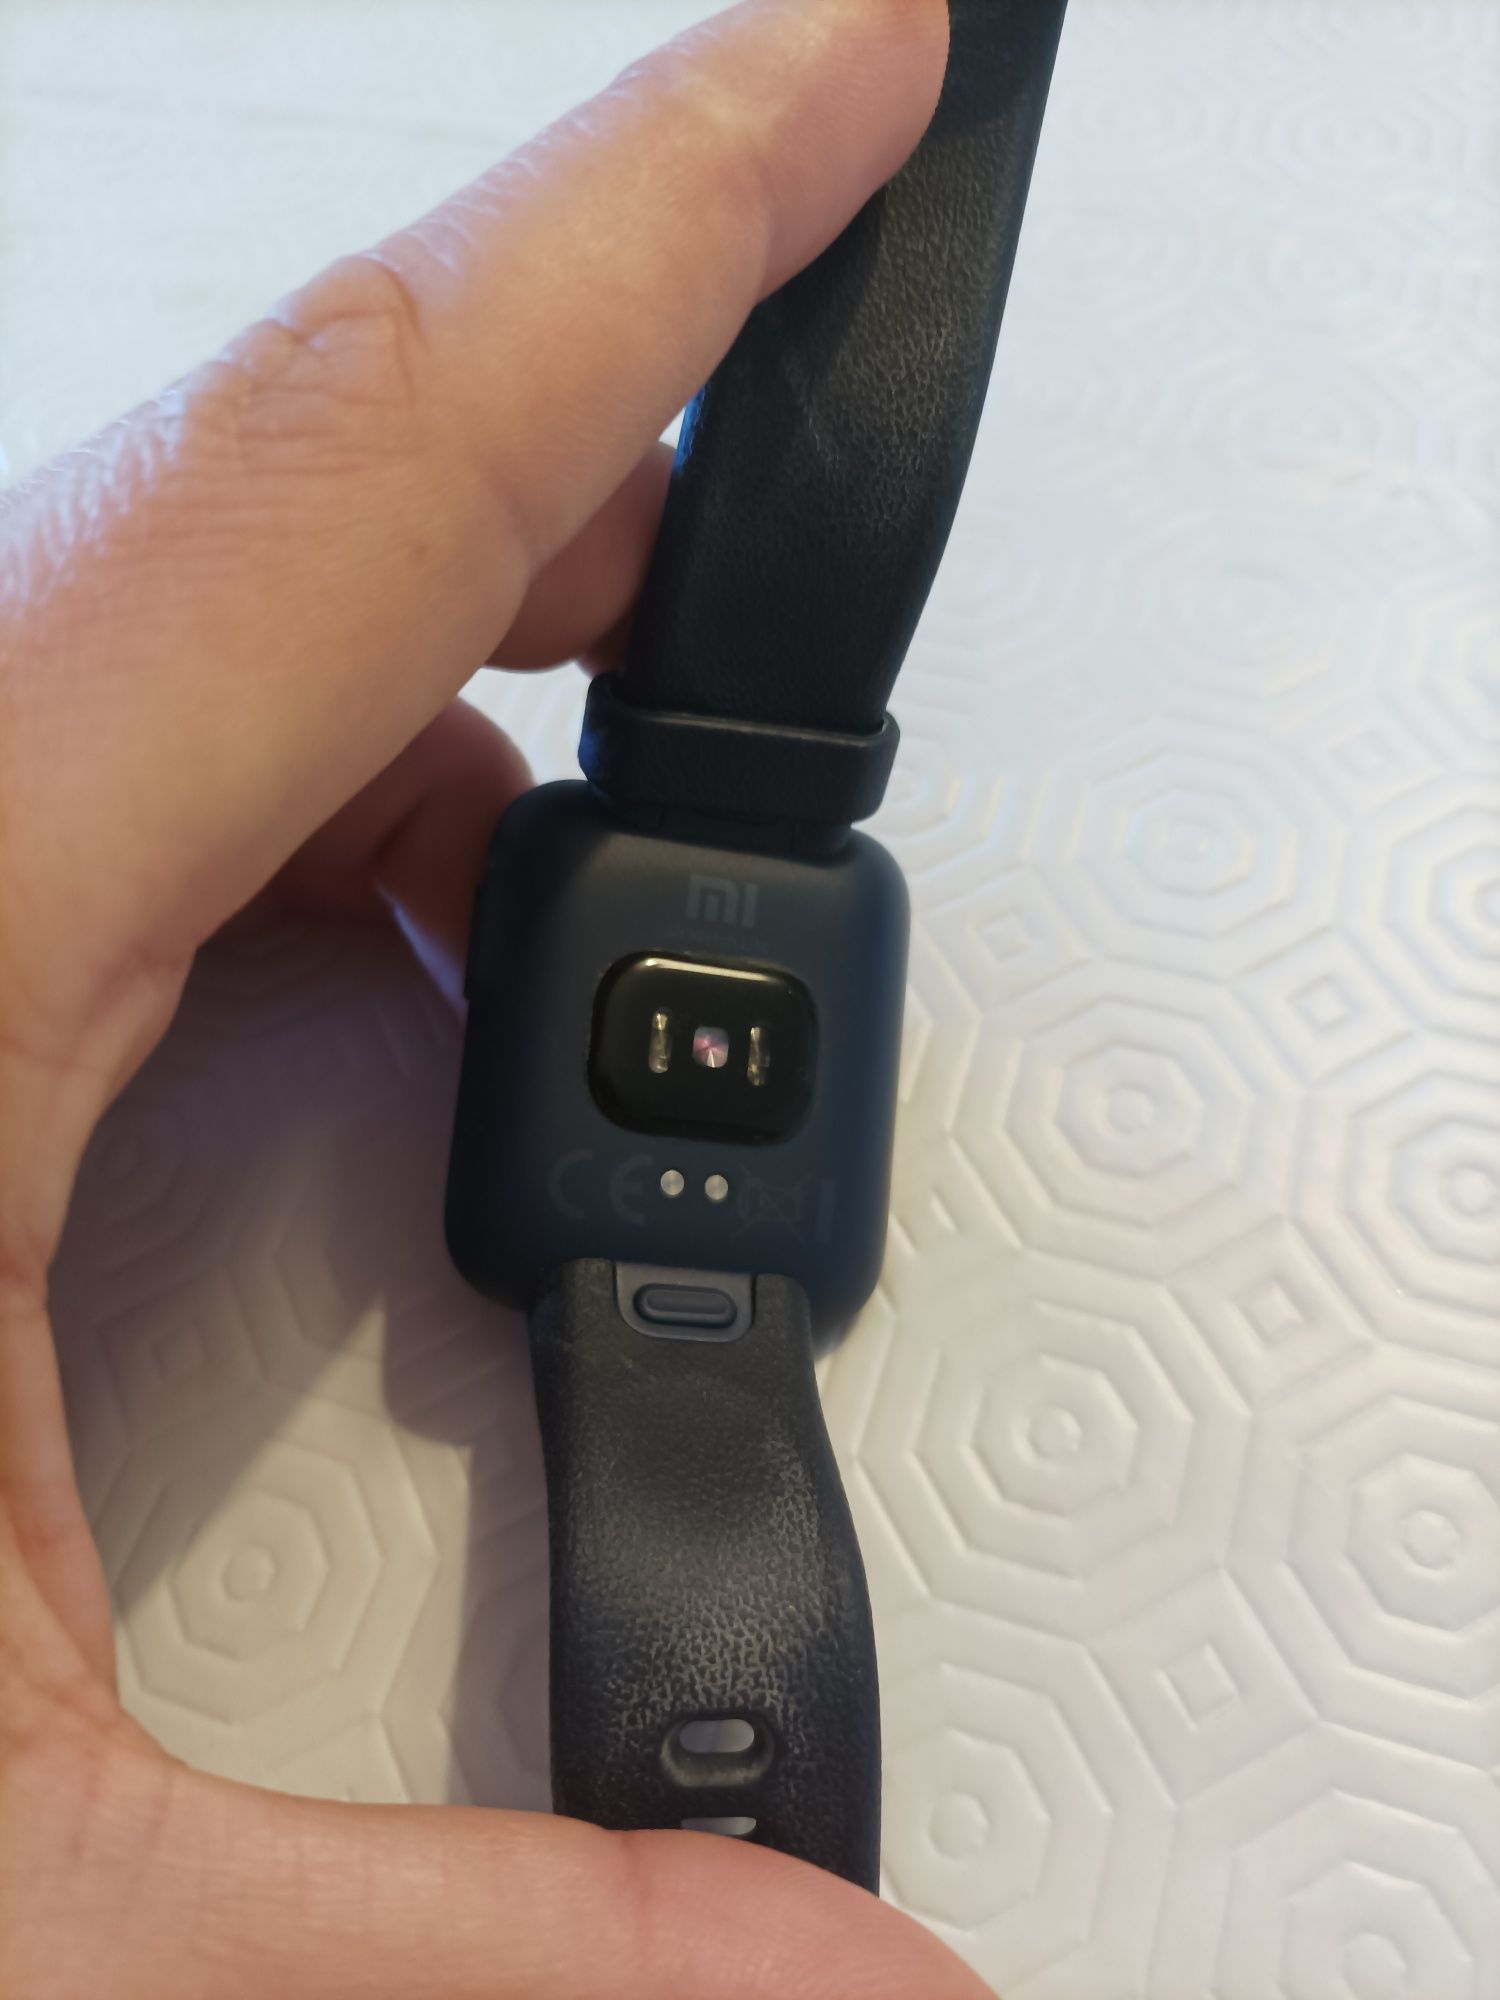 Smartwatch Redmi Watch 2 Lite